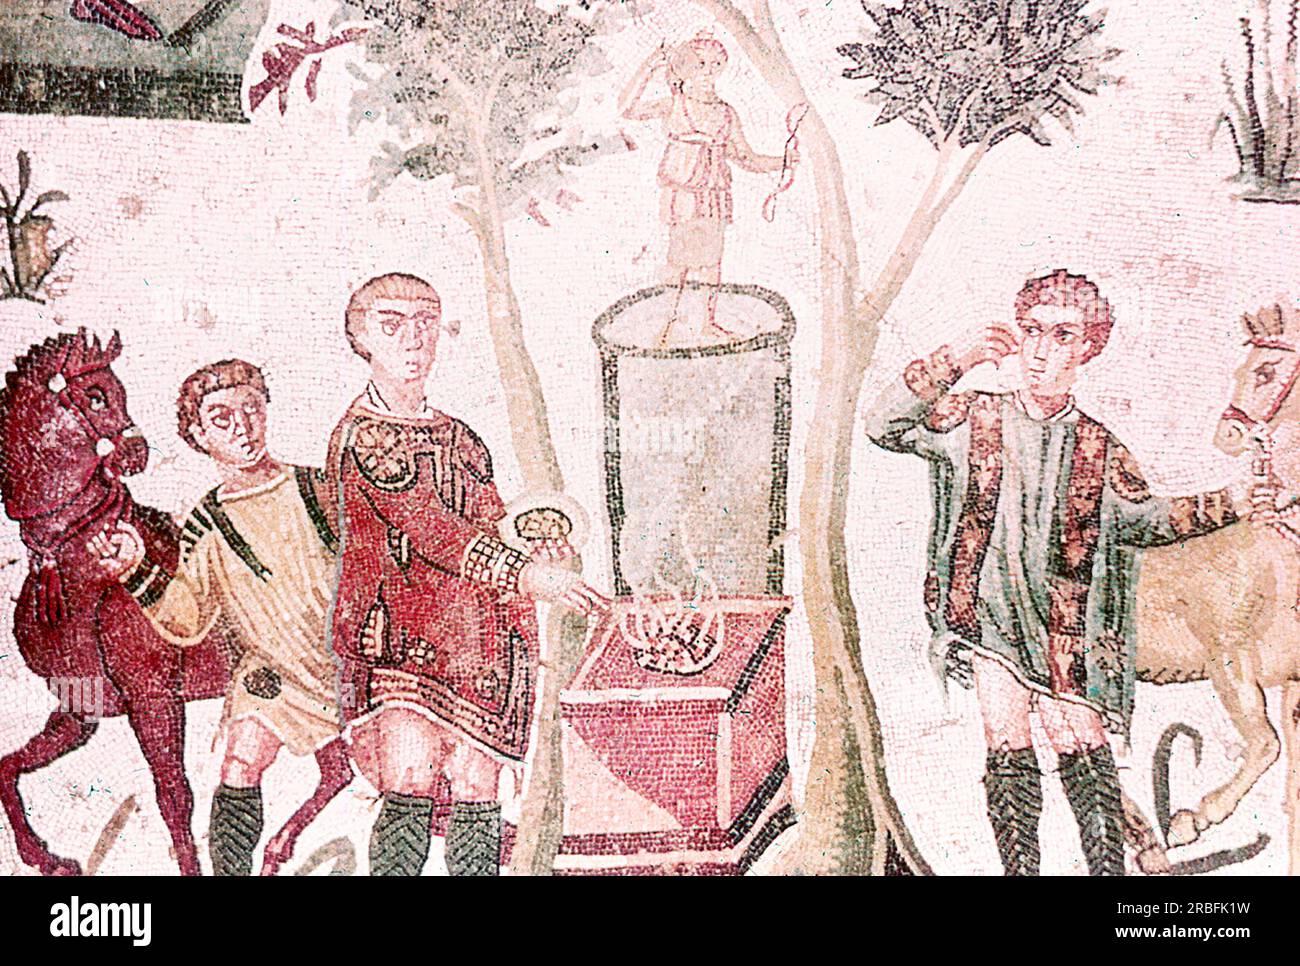 Dieses Foto eines Mosaiks, das eine kleine Jagdszene zeigt, die Artemis, die Seltsamkeit der Jagd (auch bekannt als Diana), opferte, wurde im Sommer 1970 auf der Piazza Armerina in Sizilien aufgenommen. Die Piazza Armerina beherbergt die römische Villa del Casale und ihre berühmten Mosaiken, die „besten Mosaike in situ in der römischen Welt“, wie von der UNESCO beschrieben, die sie 1997 in ihre Liste des Weltkulturerbes aufgenommen hat. Villa Romana war eine üppige Patrizier-Residenz, die im Zentrum eines riesigen Latifundiums (Landwirtschaftsgelände) am Ende des 4. Jahrhunderts n. Chr. erbaut wurde. Es wird angenommen, dass es einem Mitglied der Roma gehört hat Stockfoto